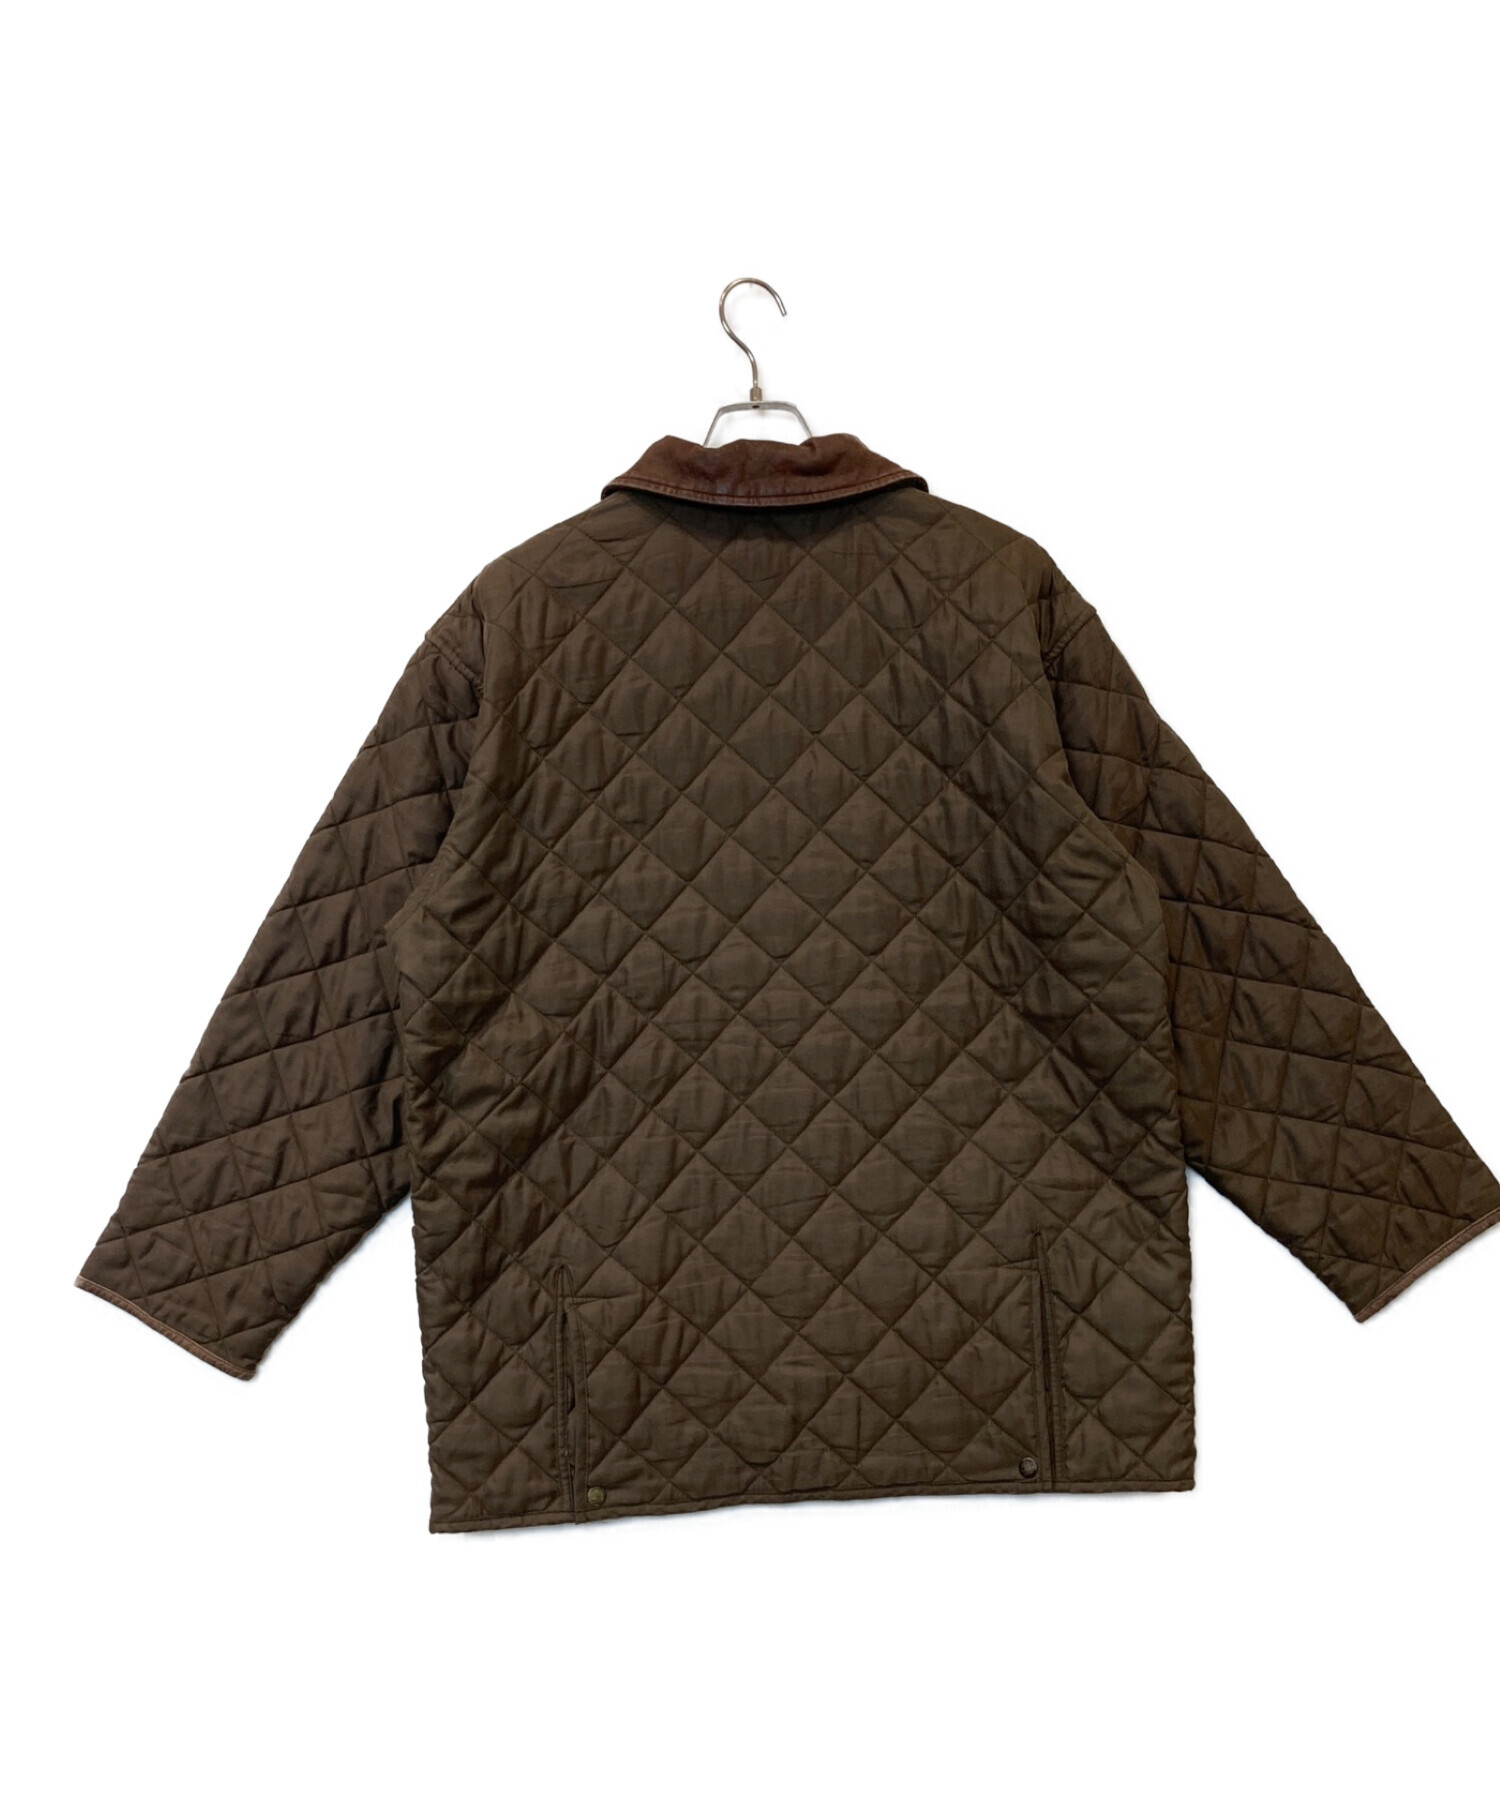 Timberland (ティンバーランド) 襟レザーキルティングジャケット オリーブ サイズ:XL